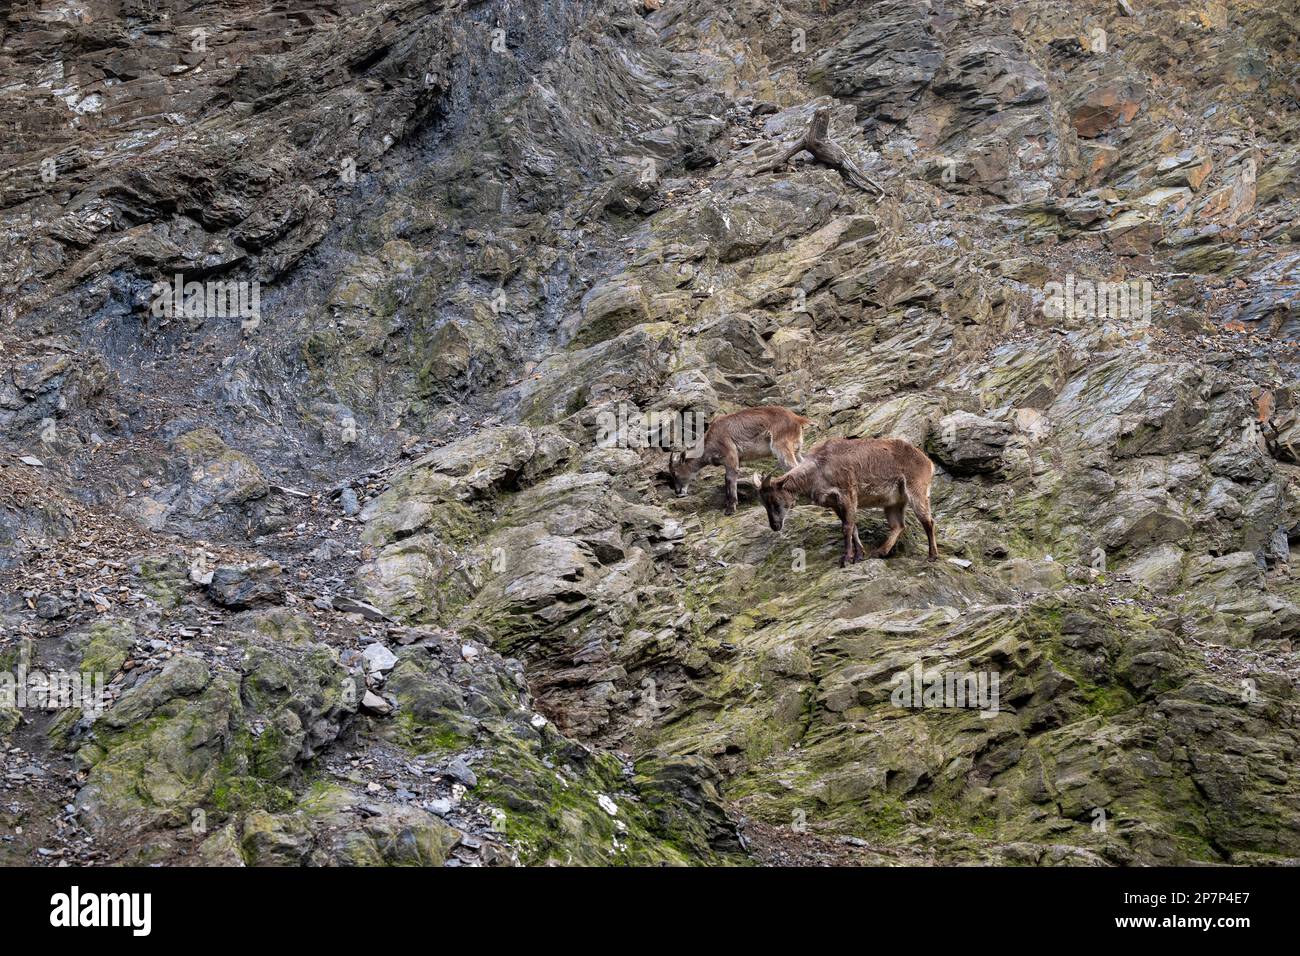 Mountain goats on the slopes.  Stock Photo